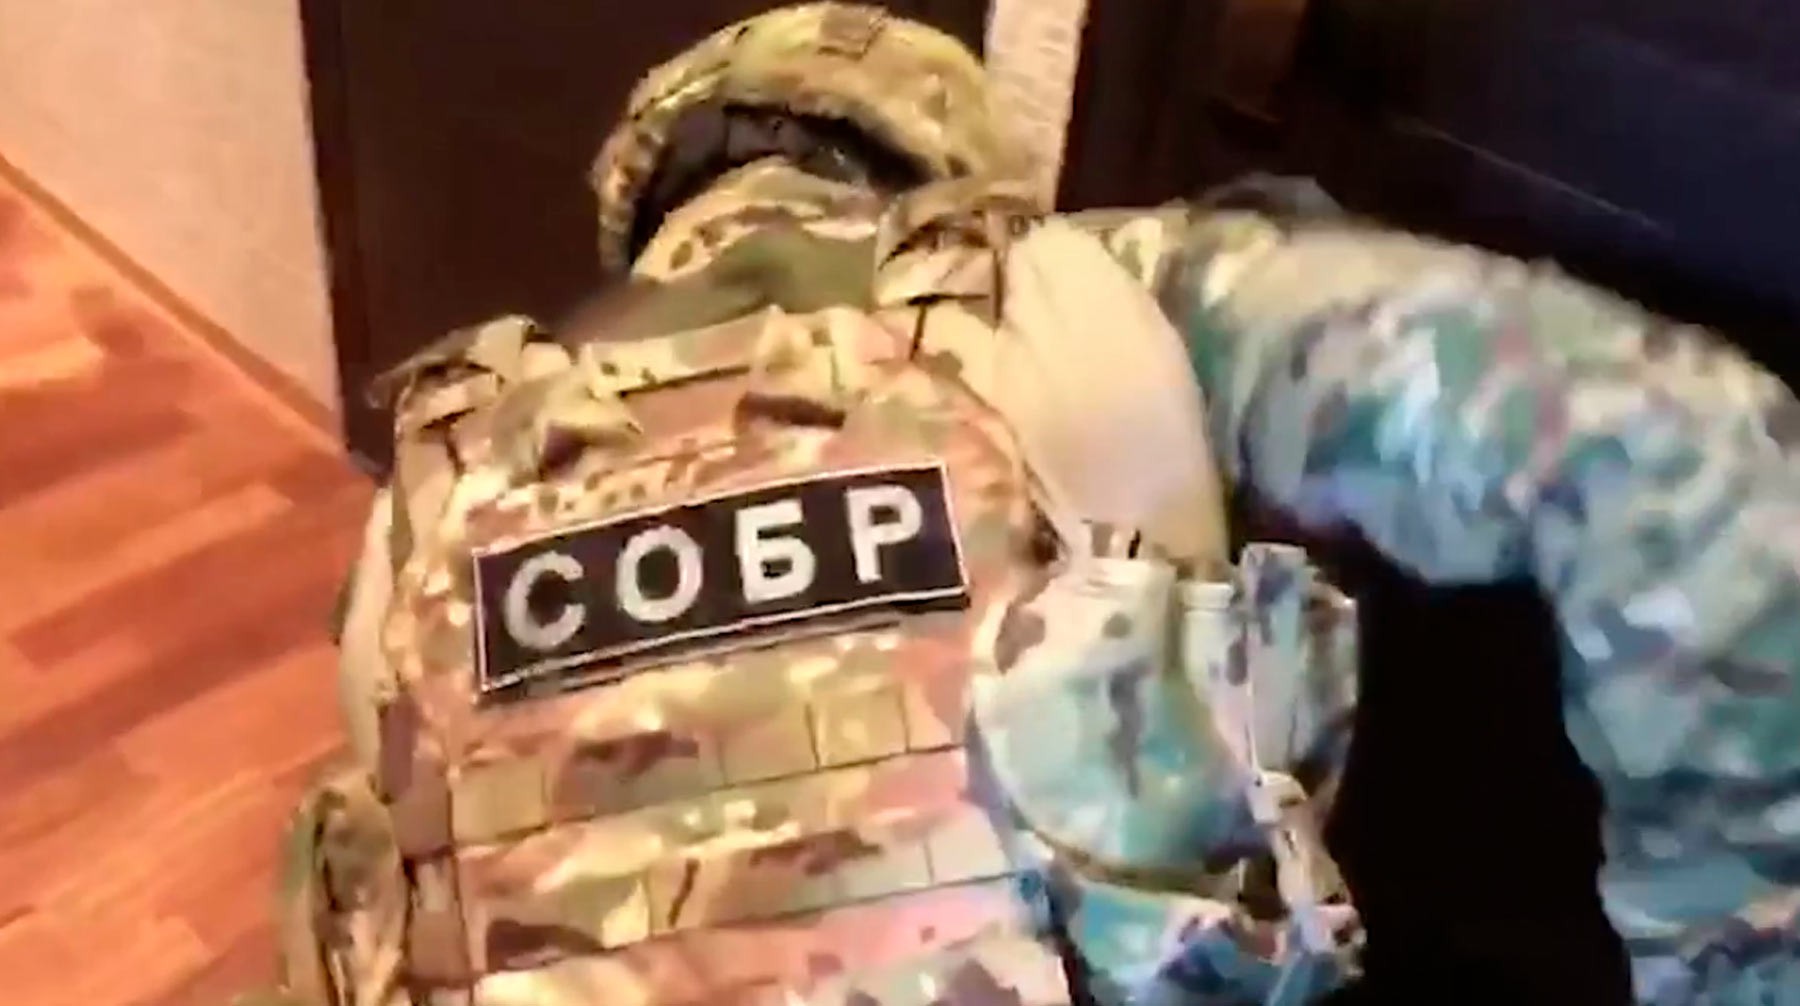 Dailystorm - ФСБ задержала 13 человек за подготовку массовых убийств